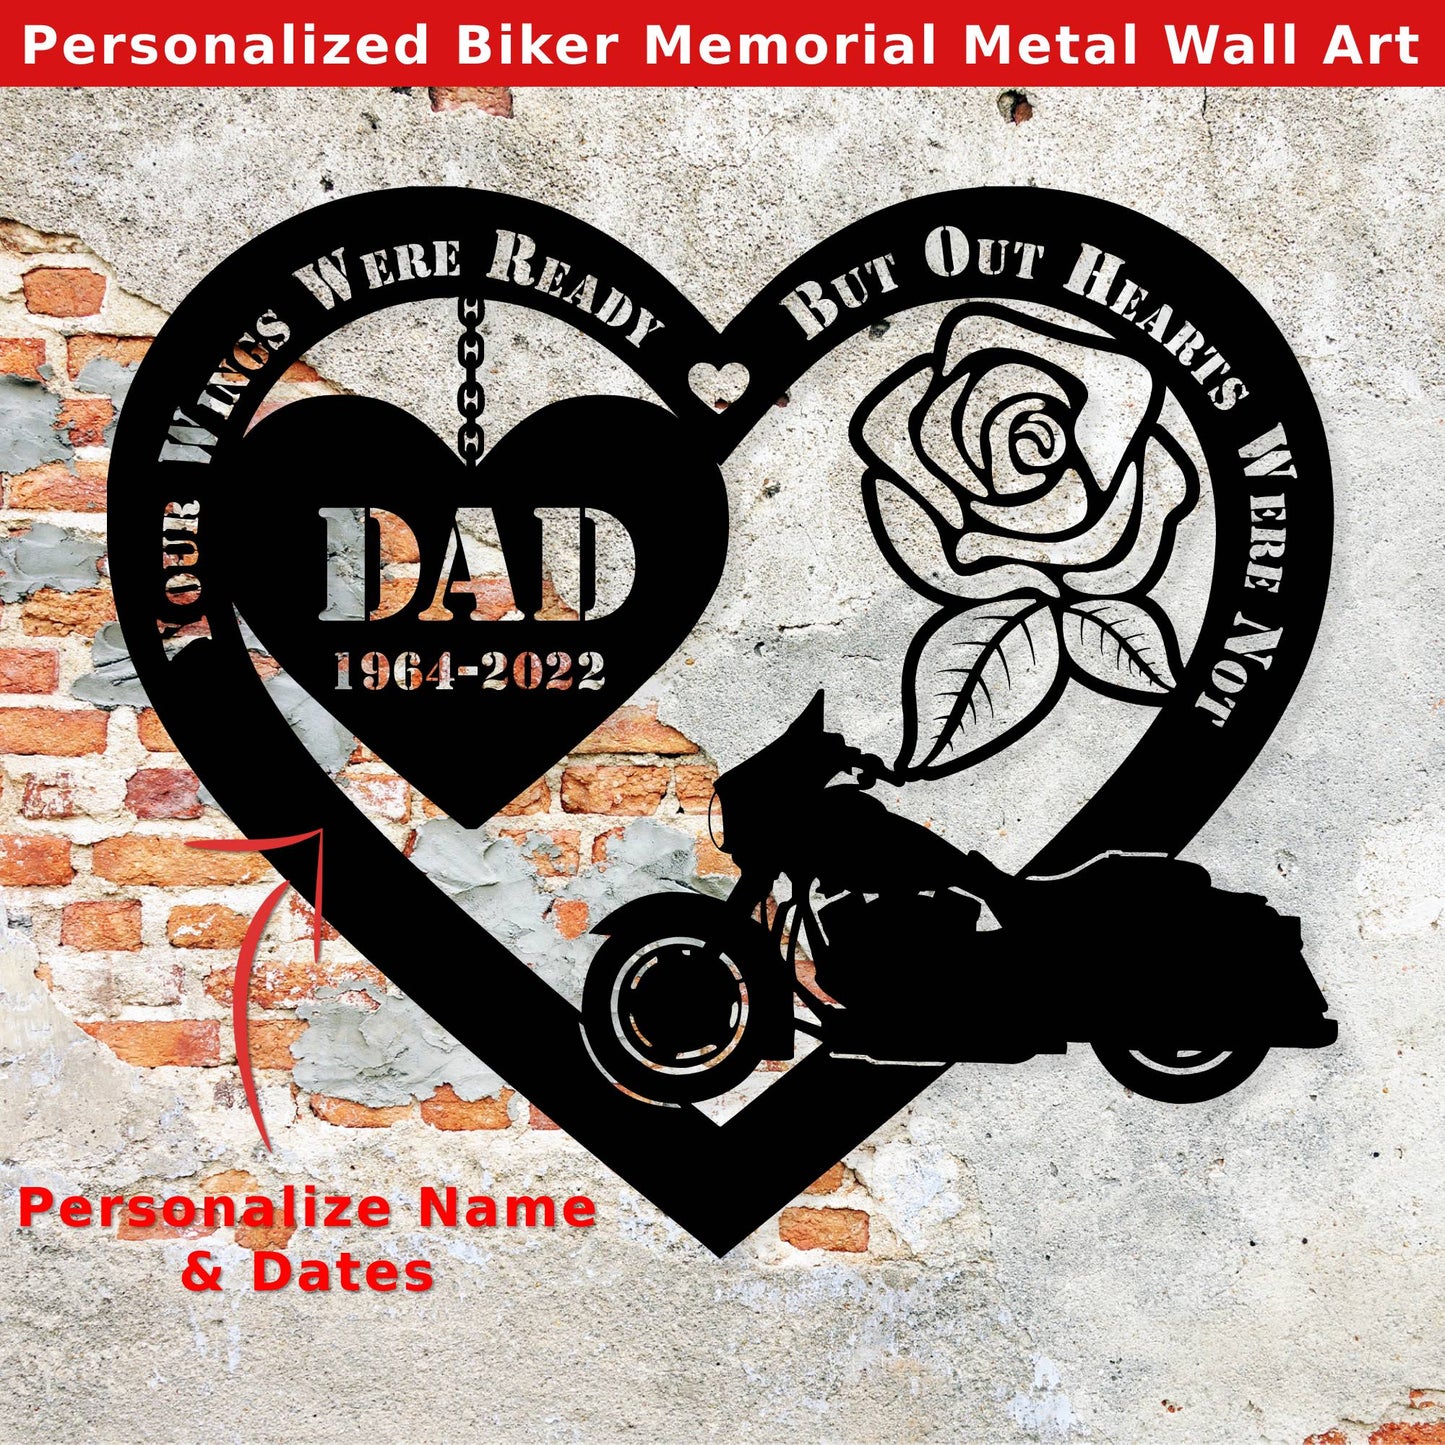 PERSONALIZED Biker Memorial Metal Wall Art